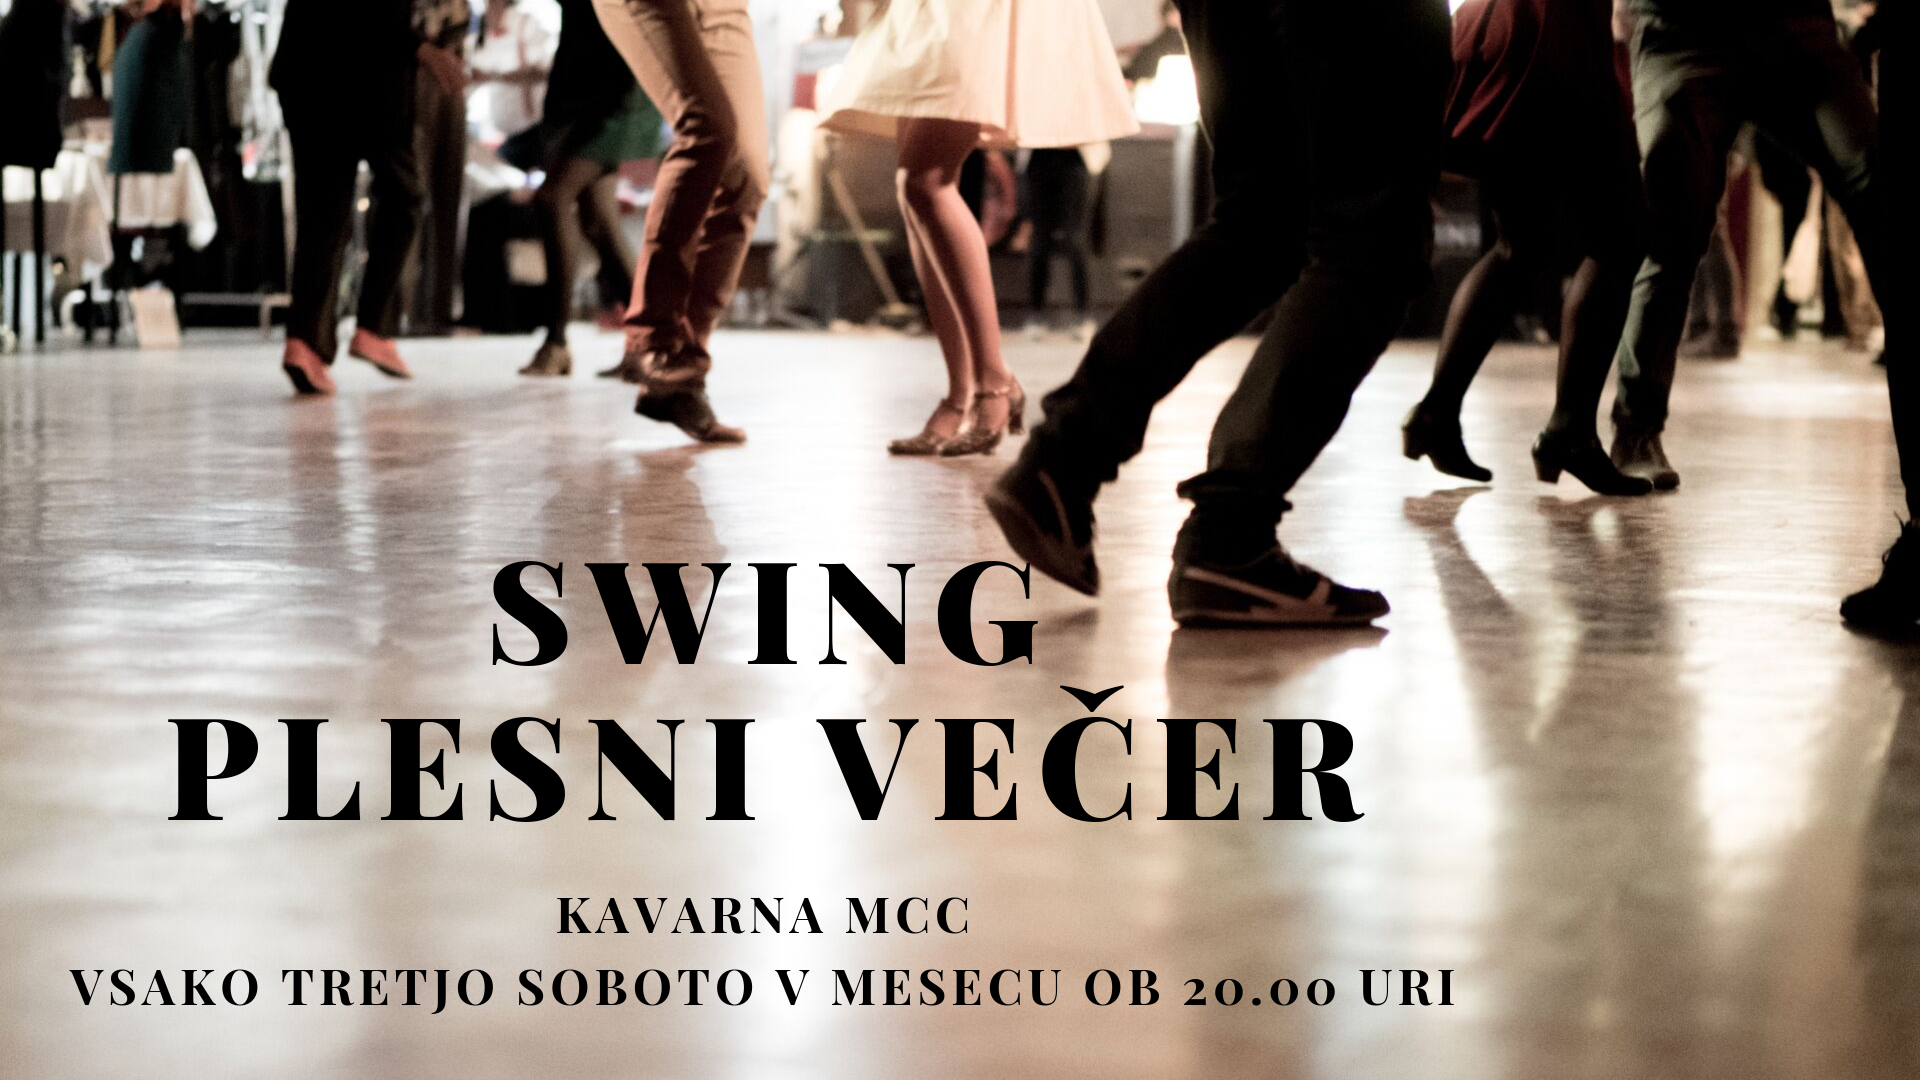 Swing plesni večer v MCC kavarni